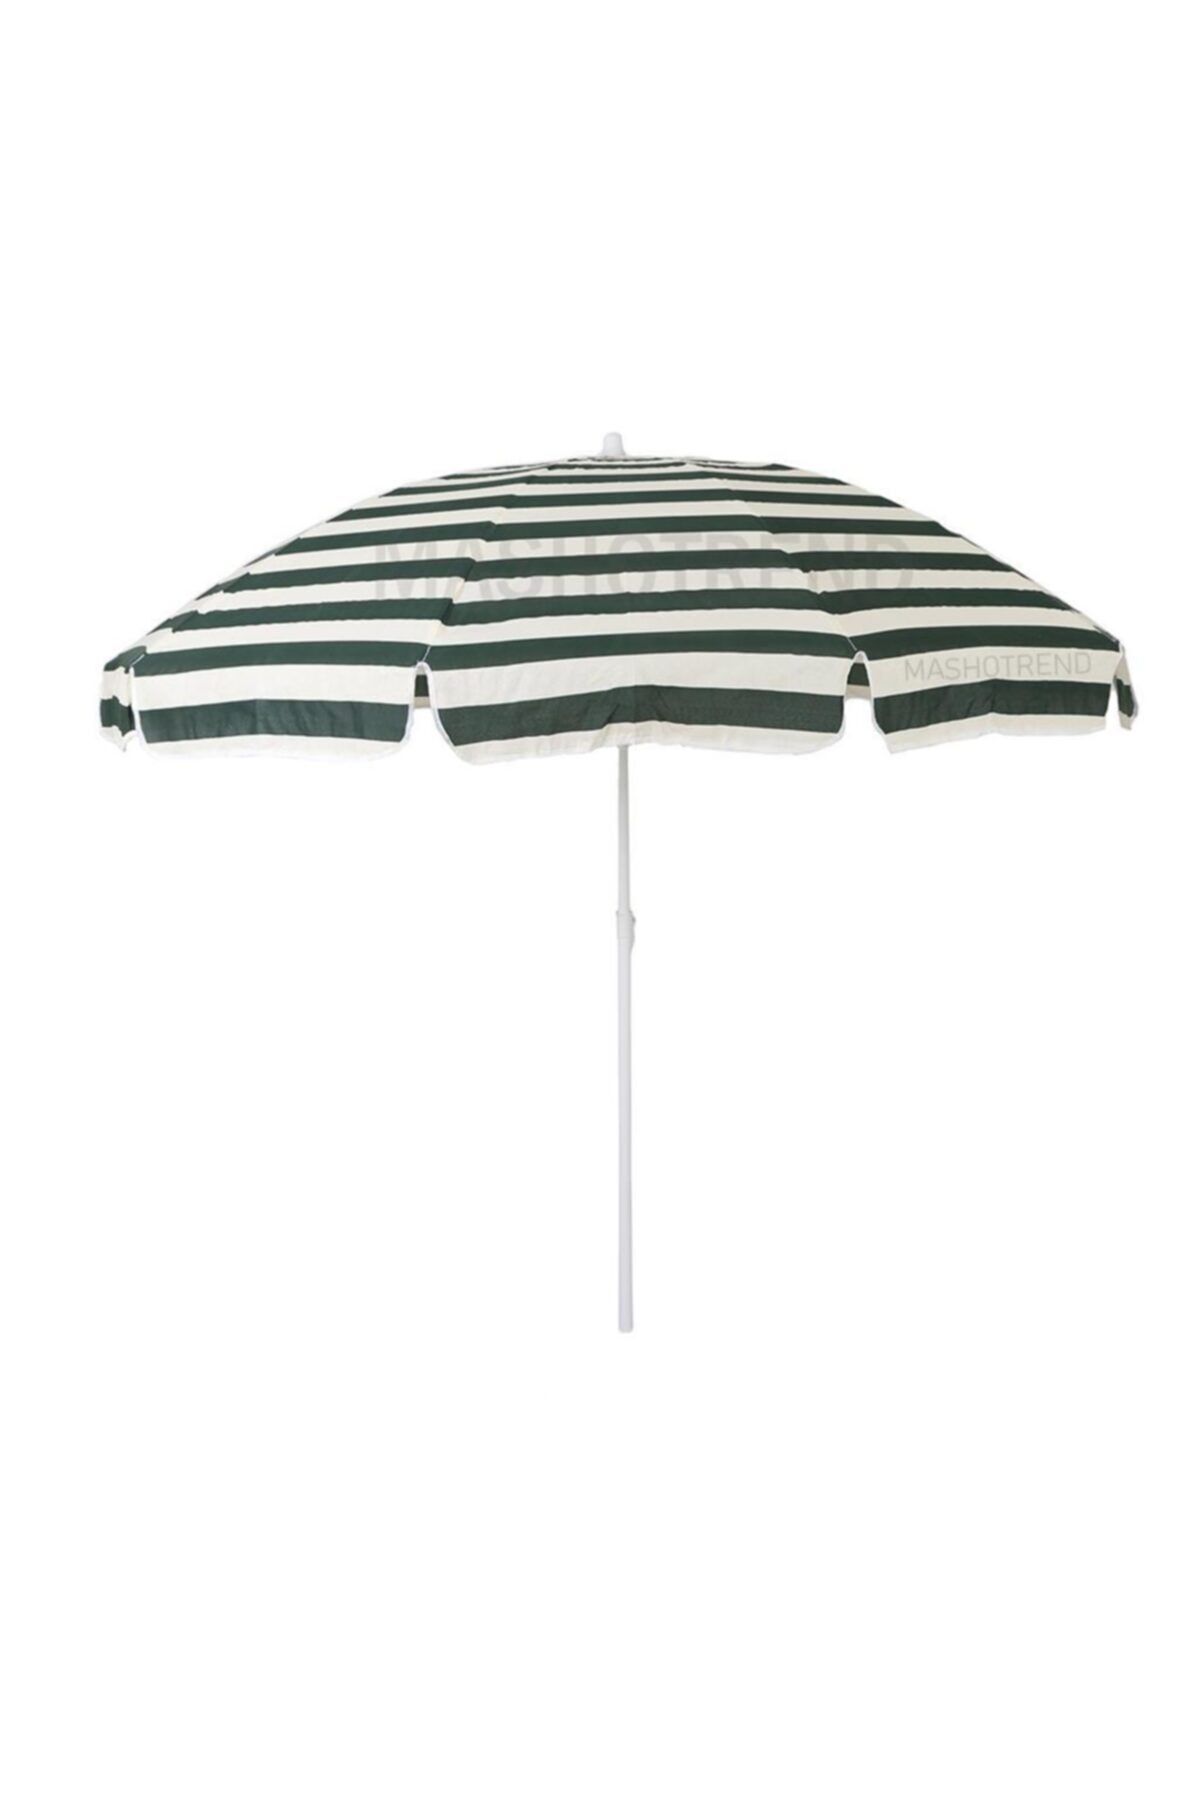 Mashotrend 2 Metre Şemsiye - Kırmalı Plaj Şemsiye - Bahçe Şemsiyesi - Balkon Şemsiyesi - Renkli Şemsiye